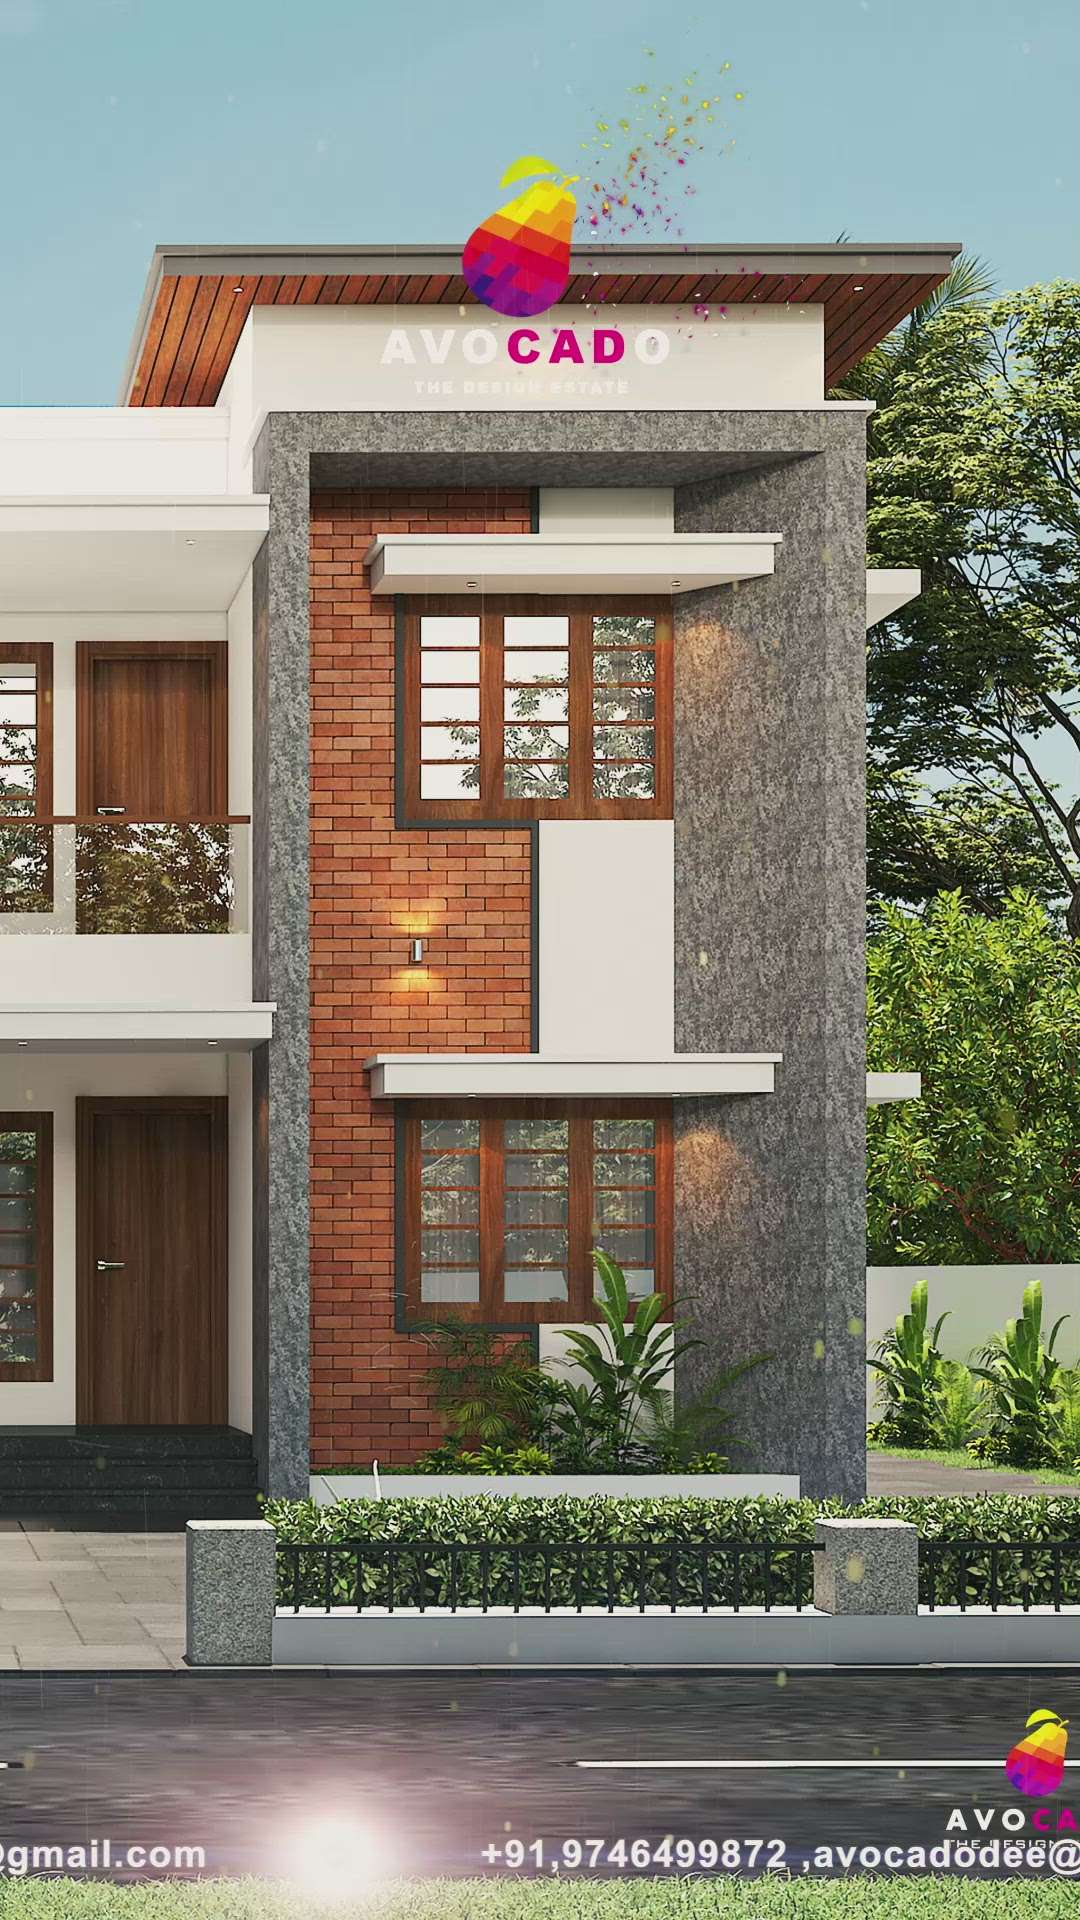 #Contractor  #ContemporaryHouse  #constructioncompany  #perubavoor  #desing  
#InteriorDesigner  #exteriordesigns  #FloorPlans  #3Dfloorplans